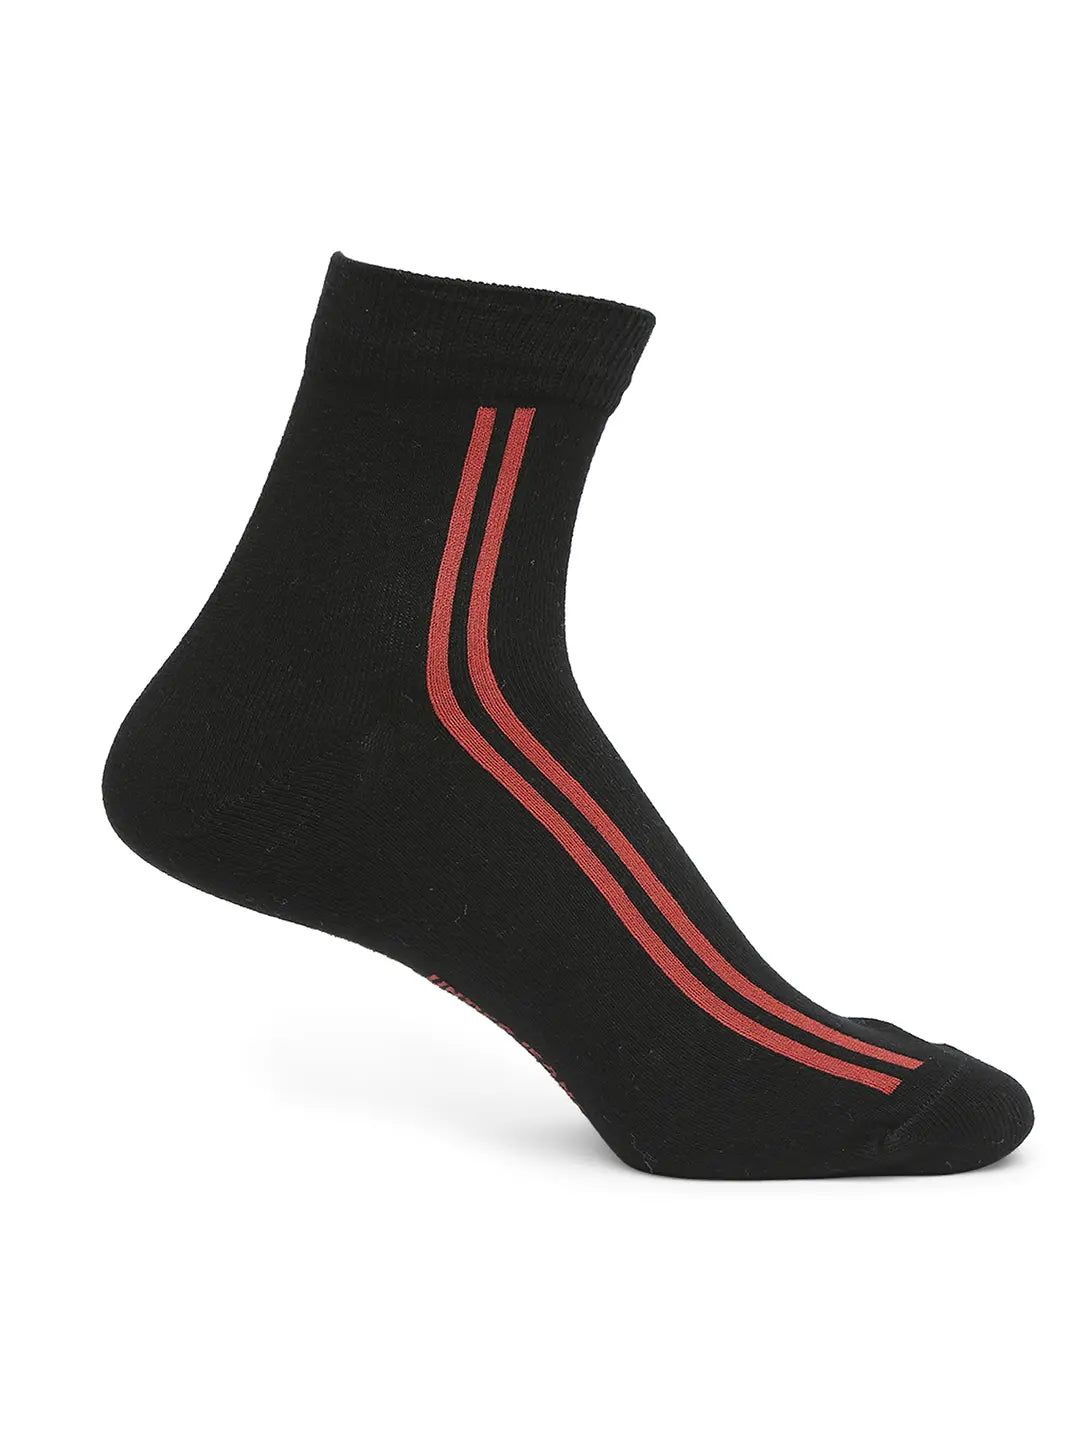 Men Premium White & Black Ankle Length Socks - Pack Of 2- Underjeans by Spykar